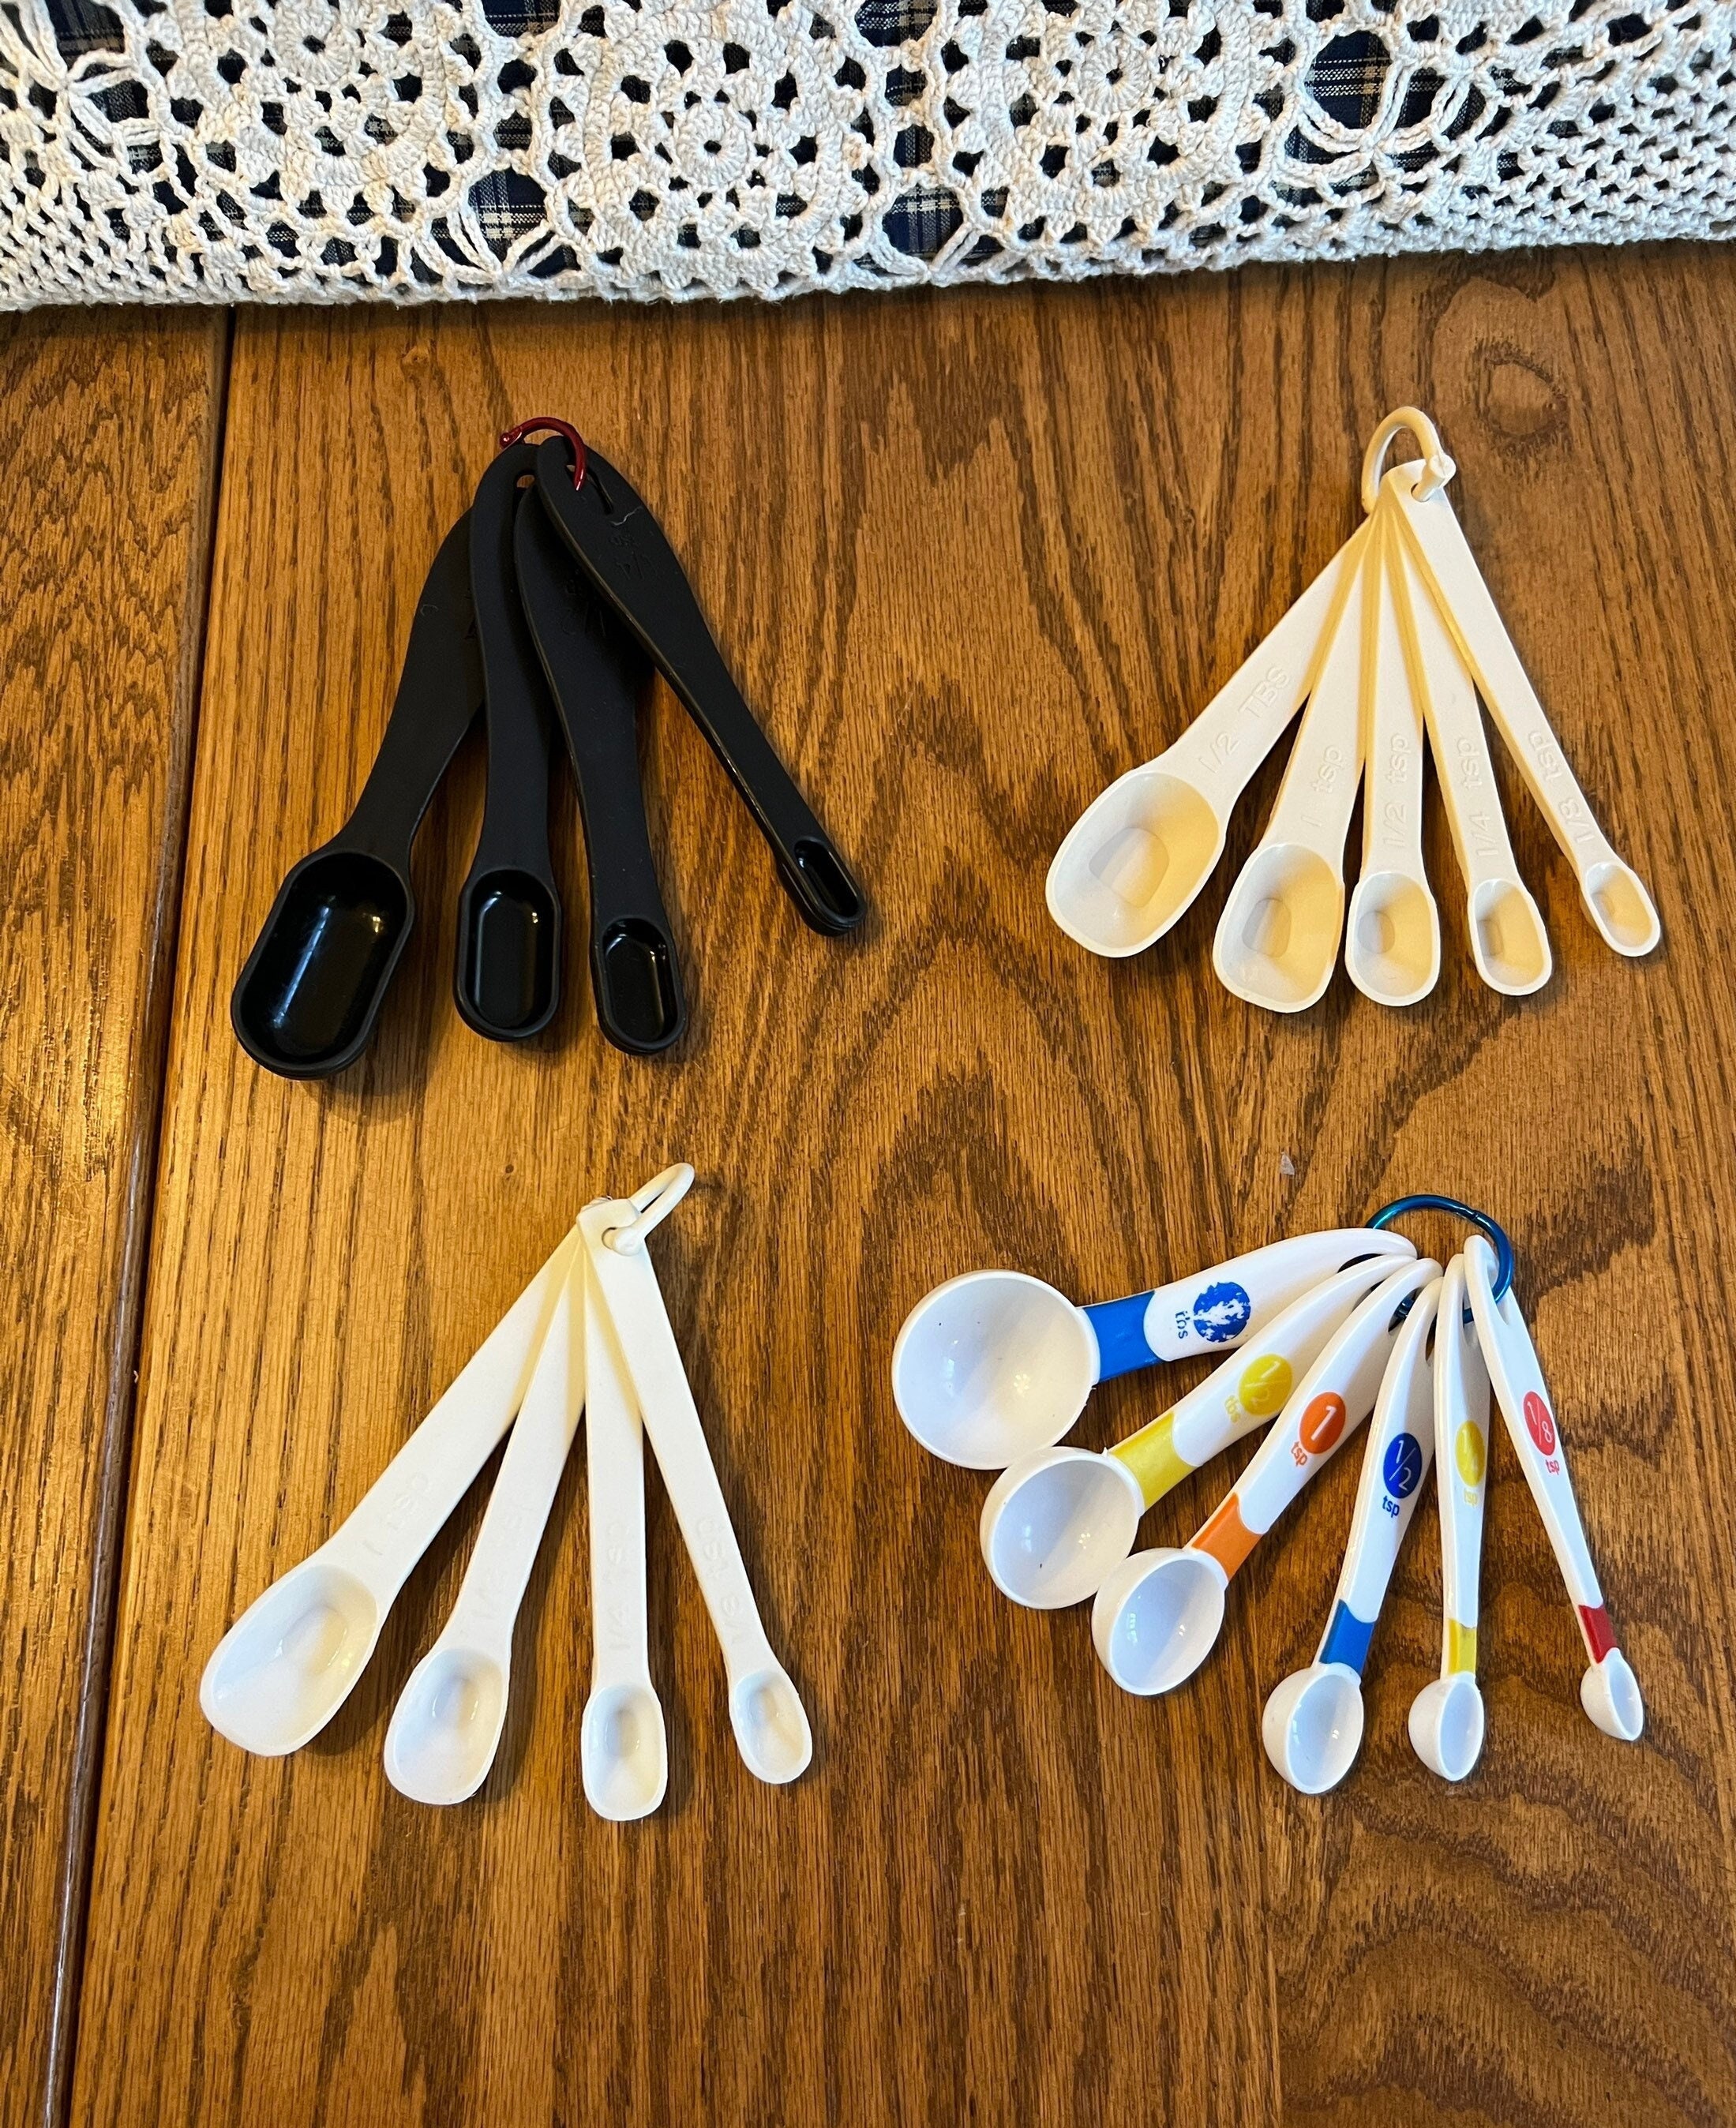 Measuring Spoons - 4 Piece - Brandless